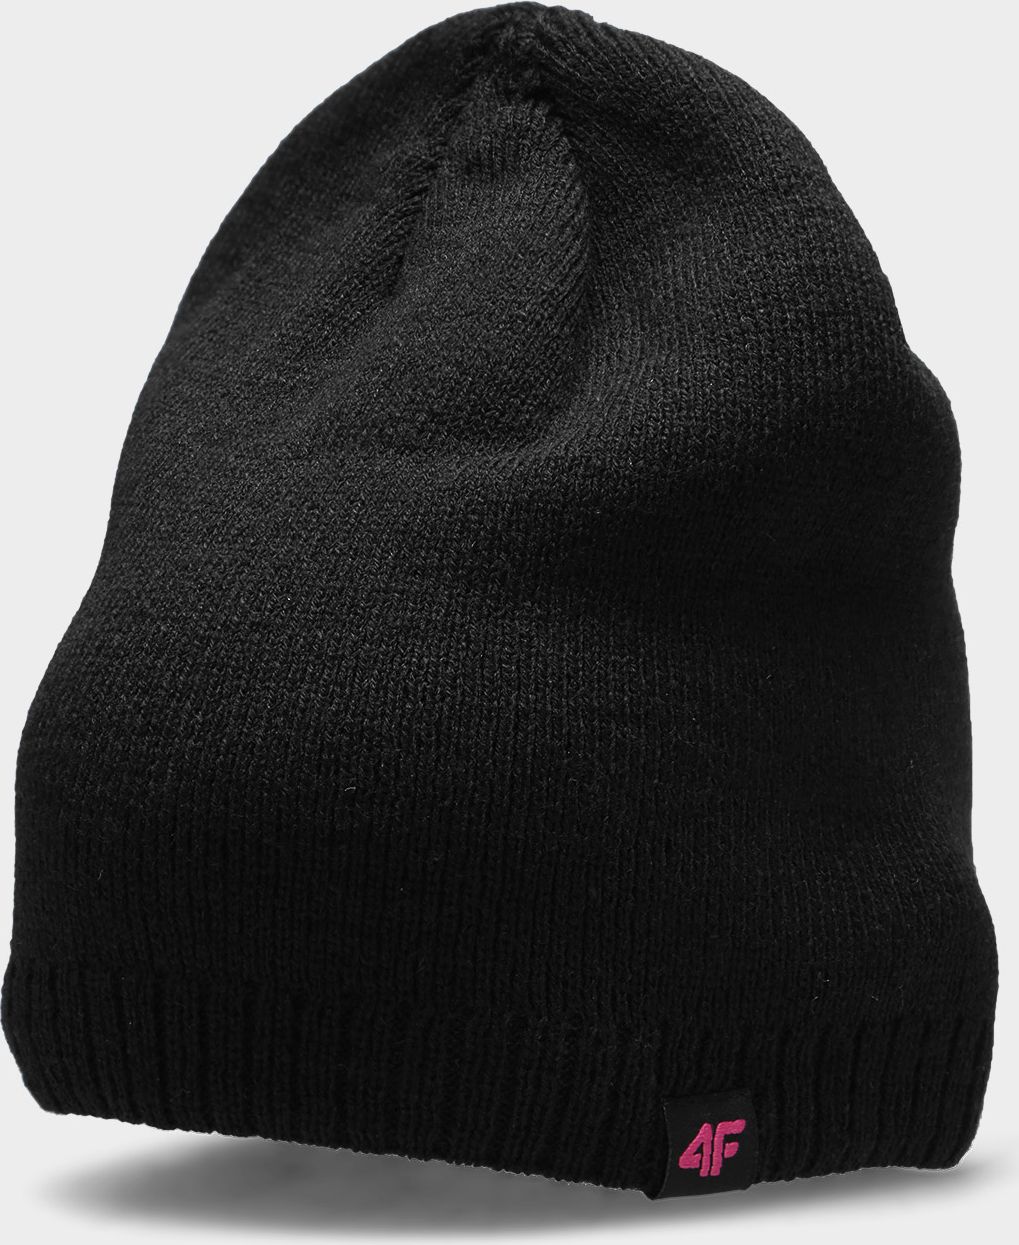 4f Pălărie de iarnă H4Z22-CAD001 Deep black r.one size